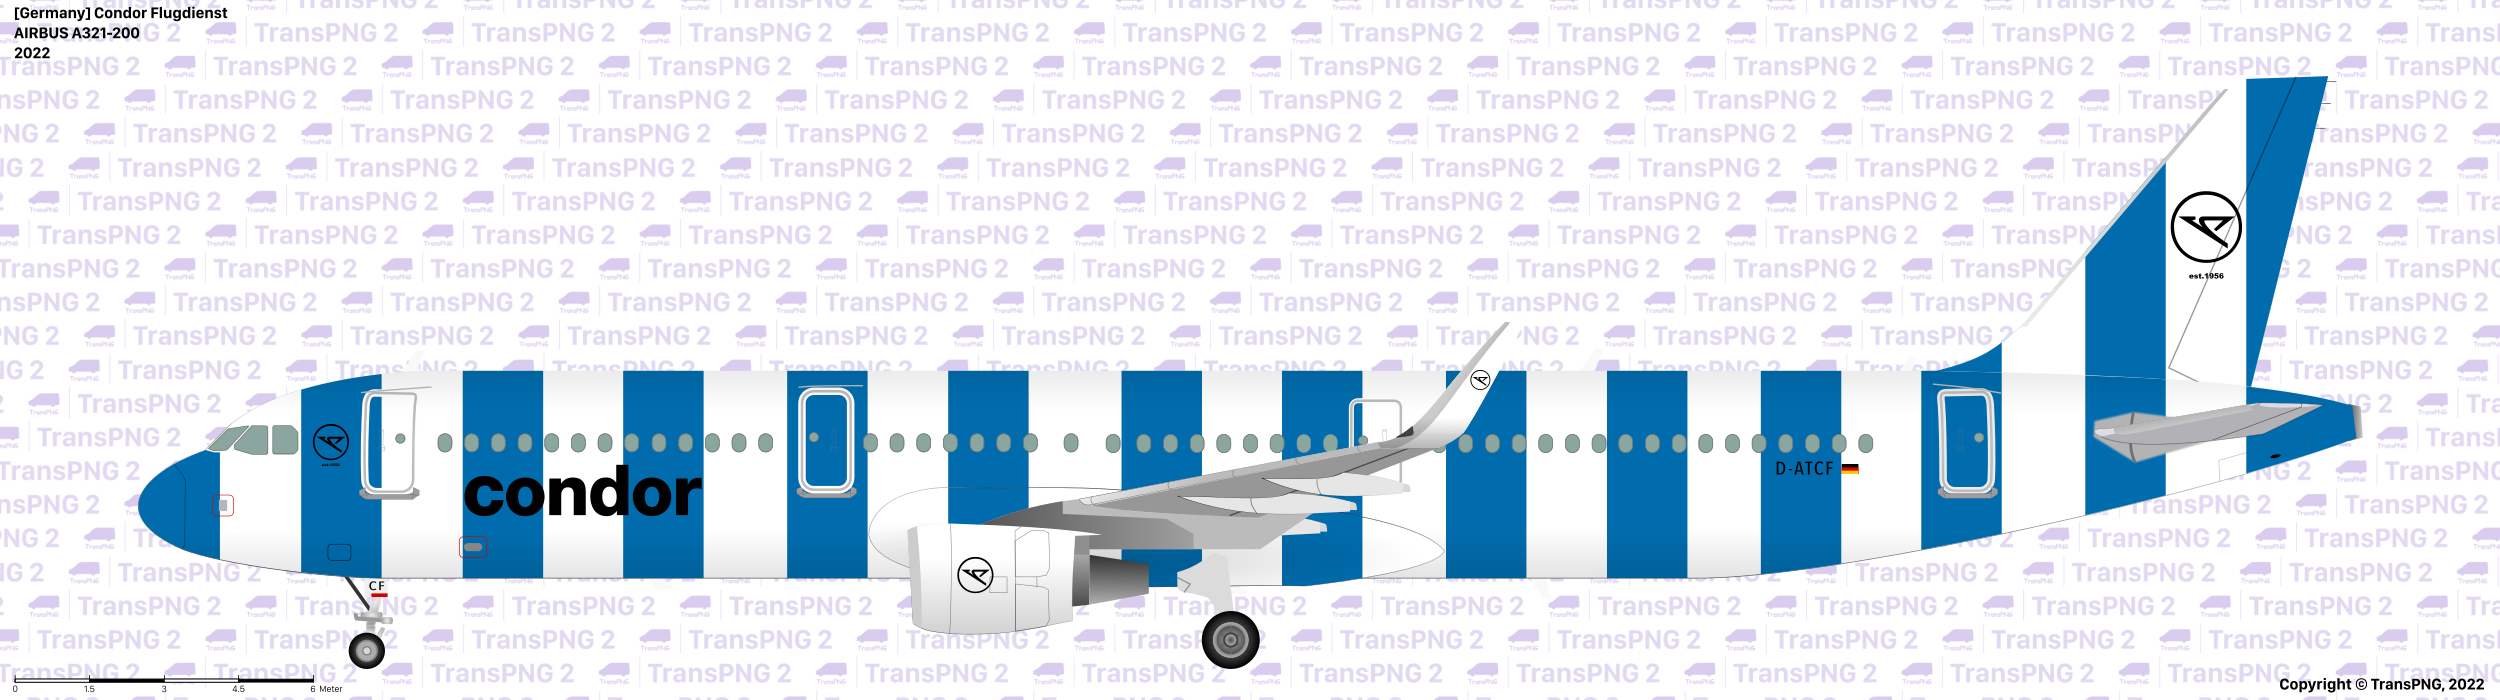 TransPNG.net | 分享世界各地多種交通工具的優秀繪圖 - 飛機 52511743603_c991a4f31f_o